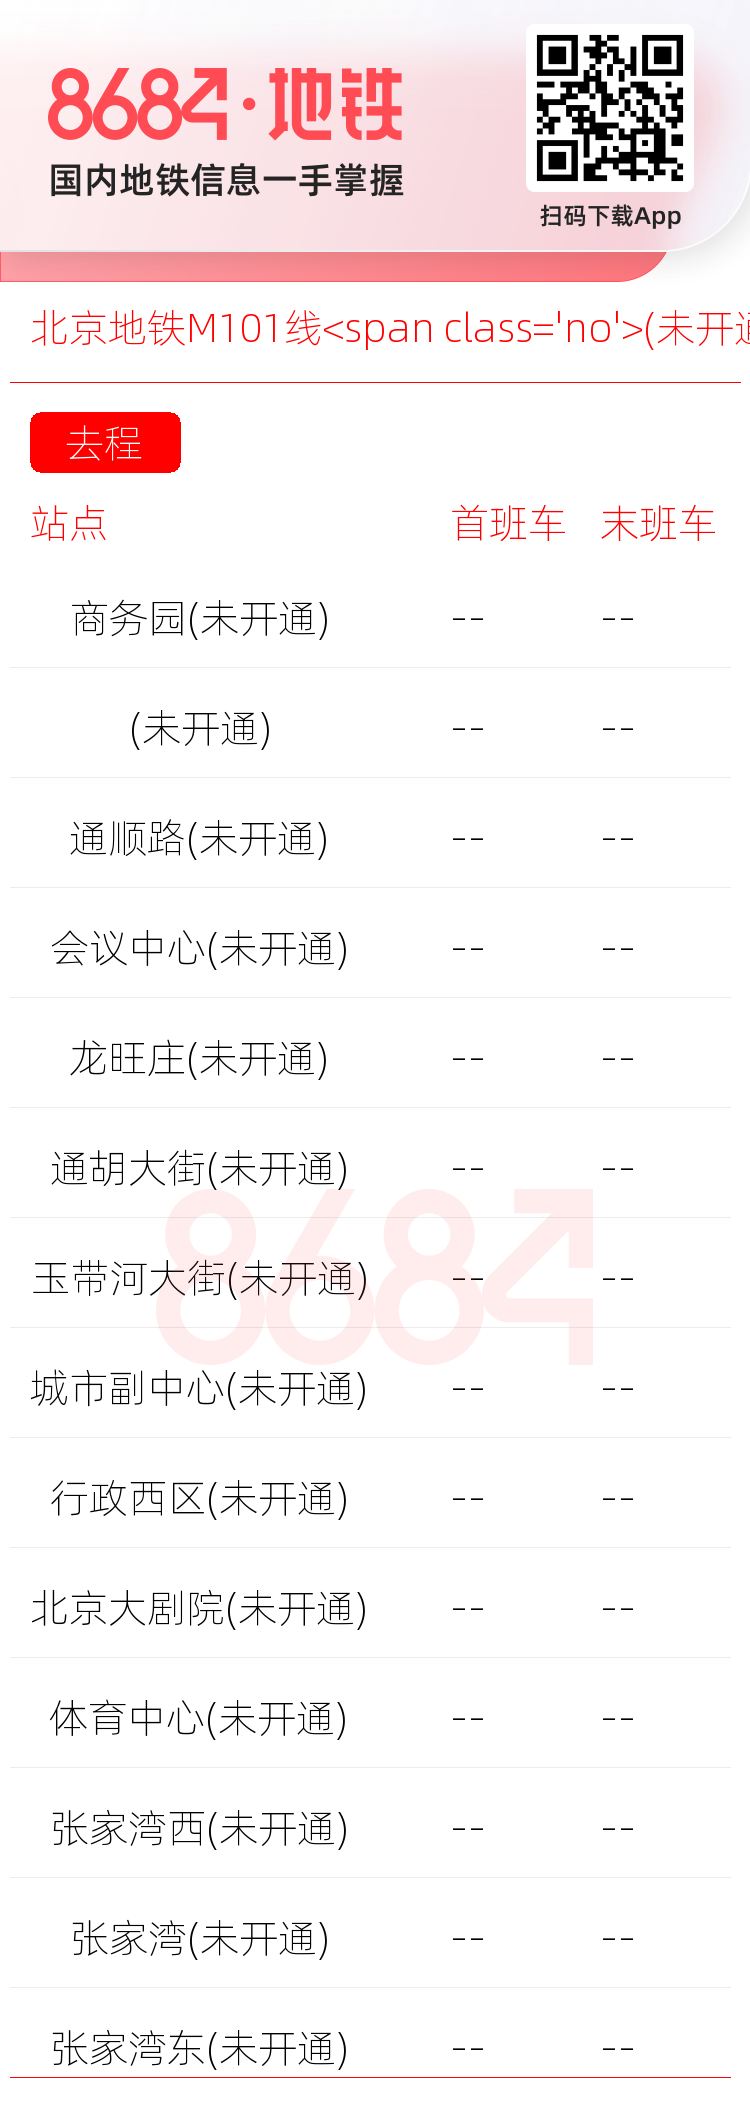 北京地铁M101线<span class='no'>(未开通)</span>运营时间表